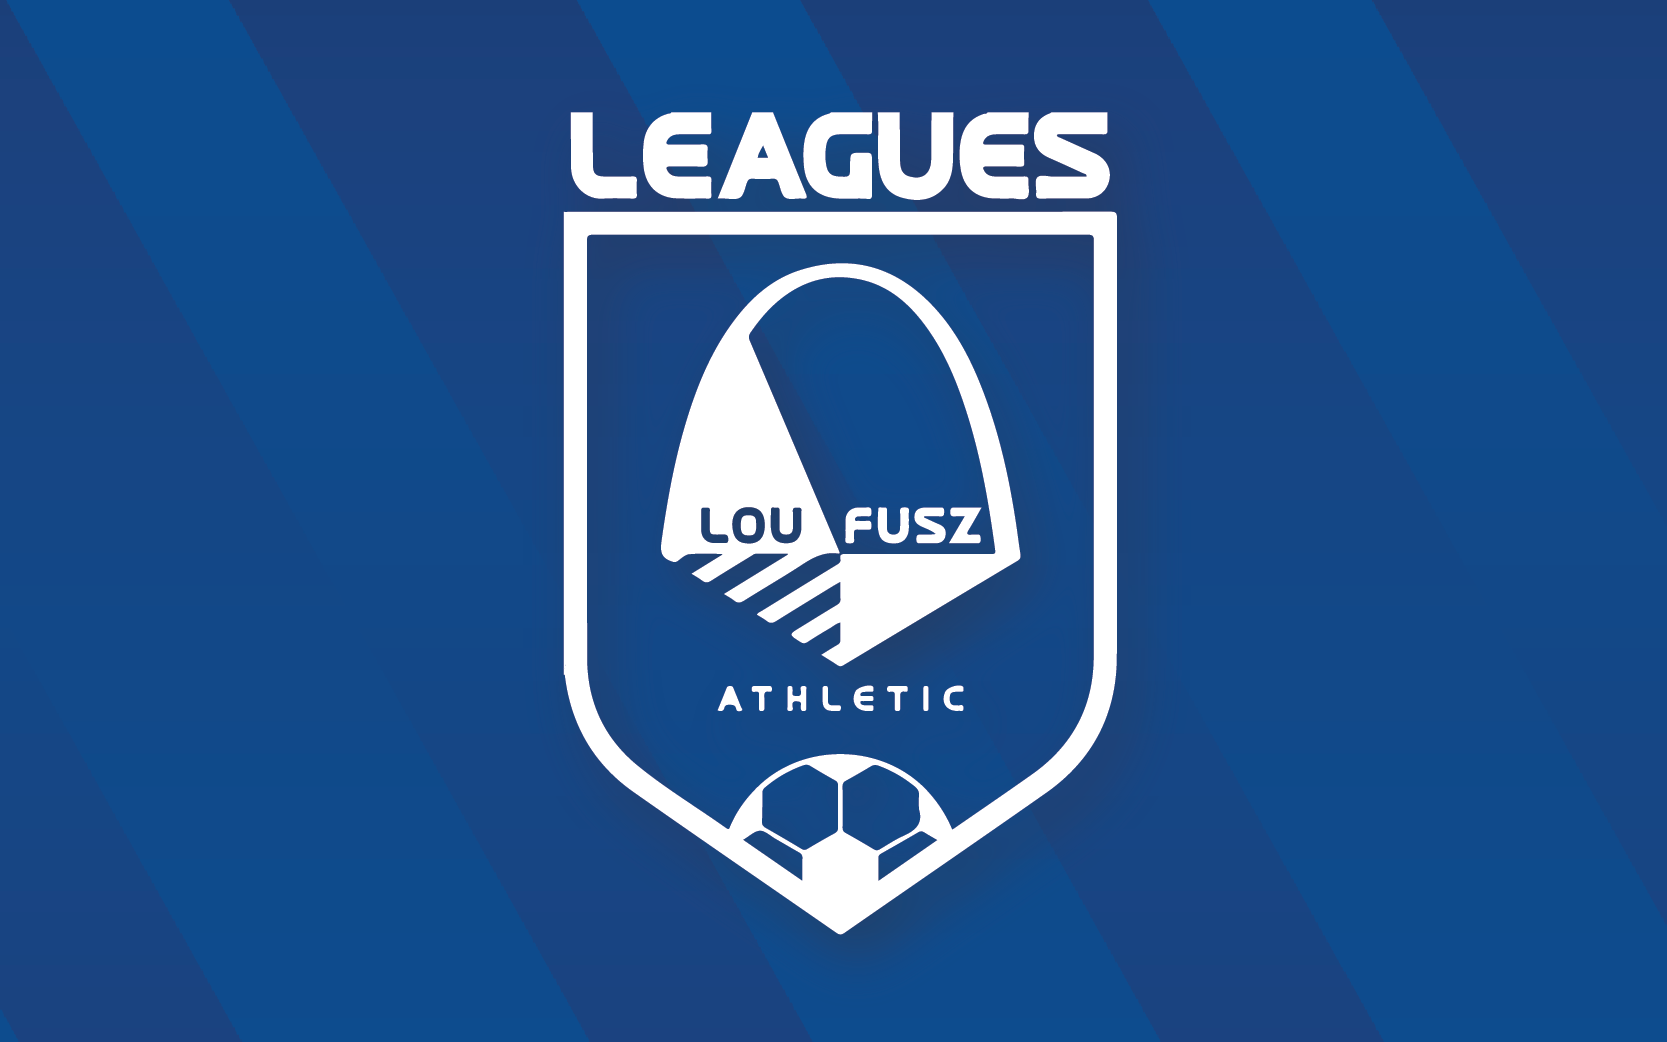 Lou Fusz athletic Soccer Leagues